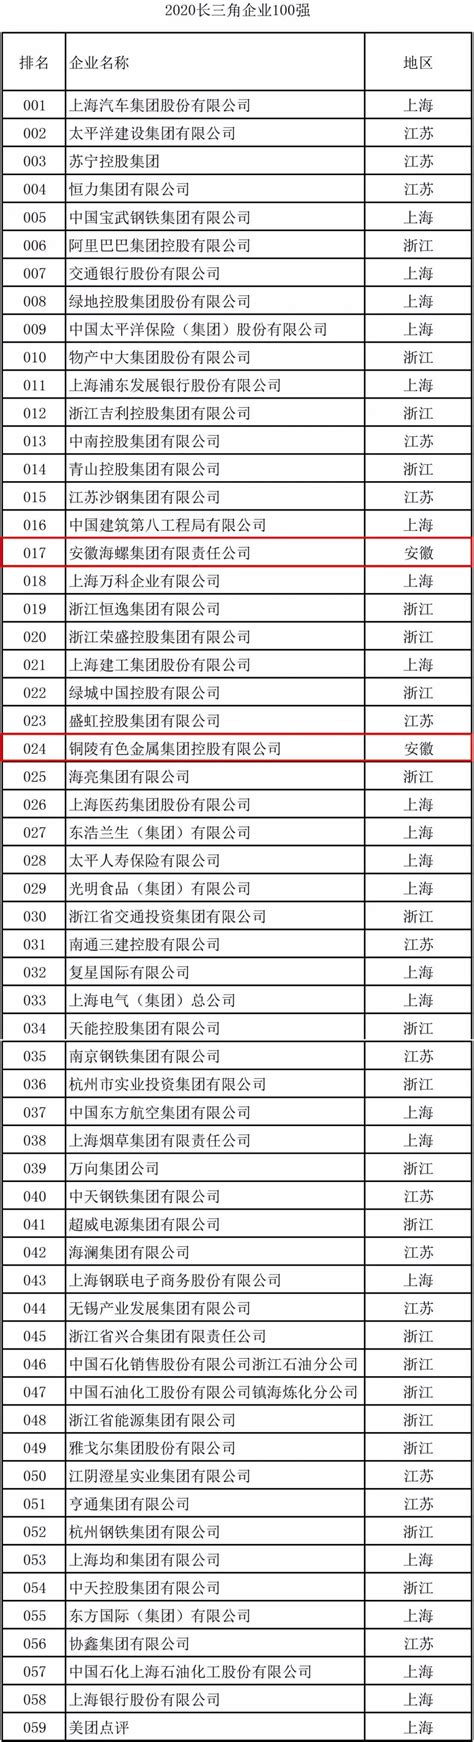 2017中国企业500强榜单发布，铜陵有色排名111位列安徽上榜企业第一名。